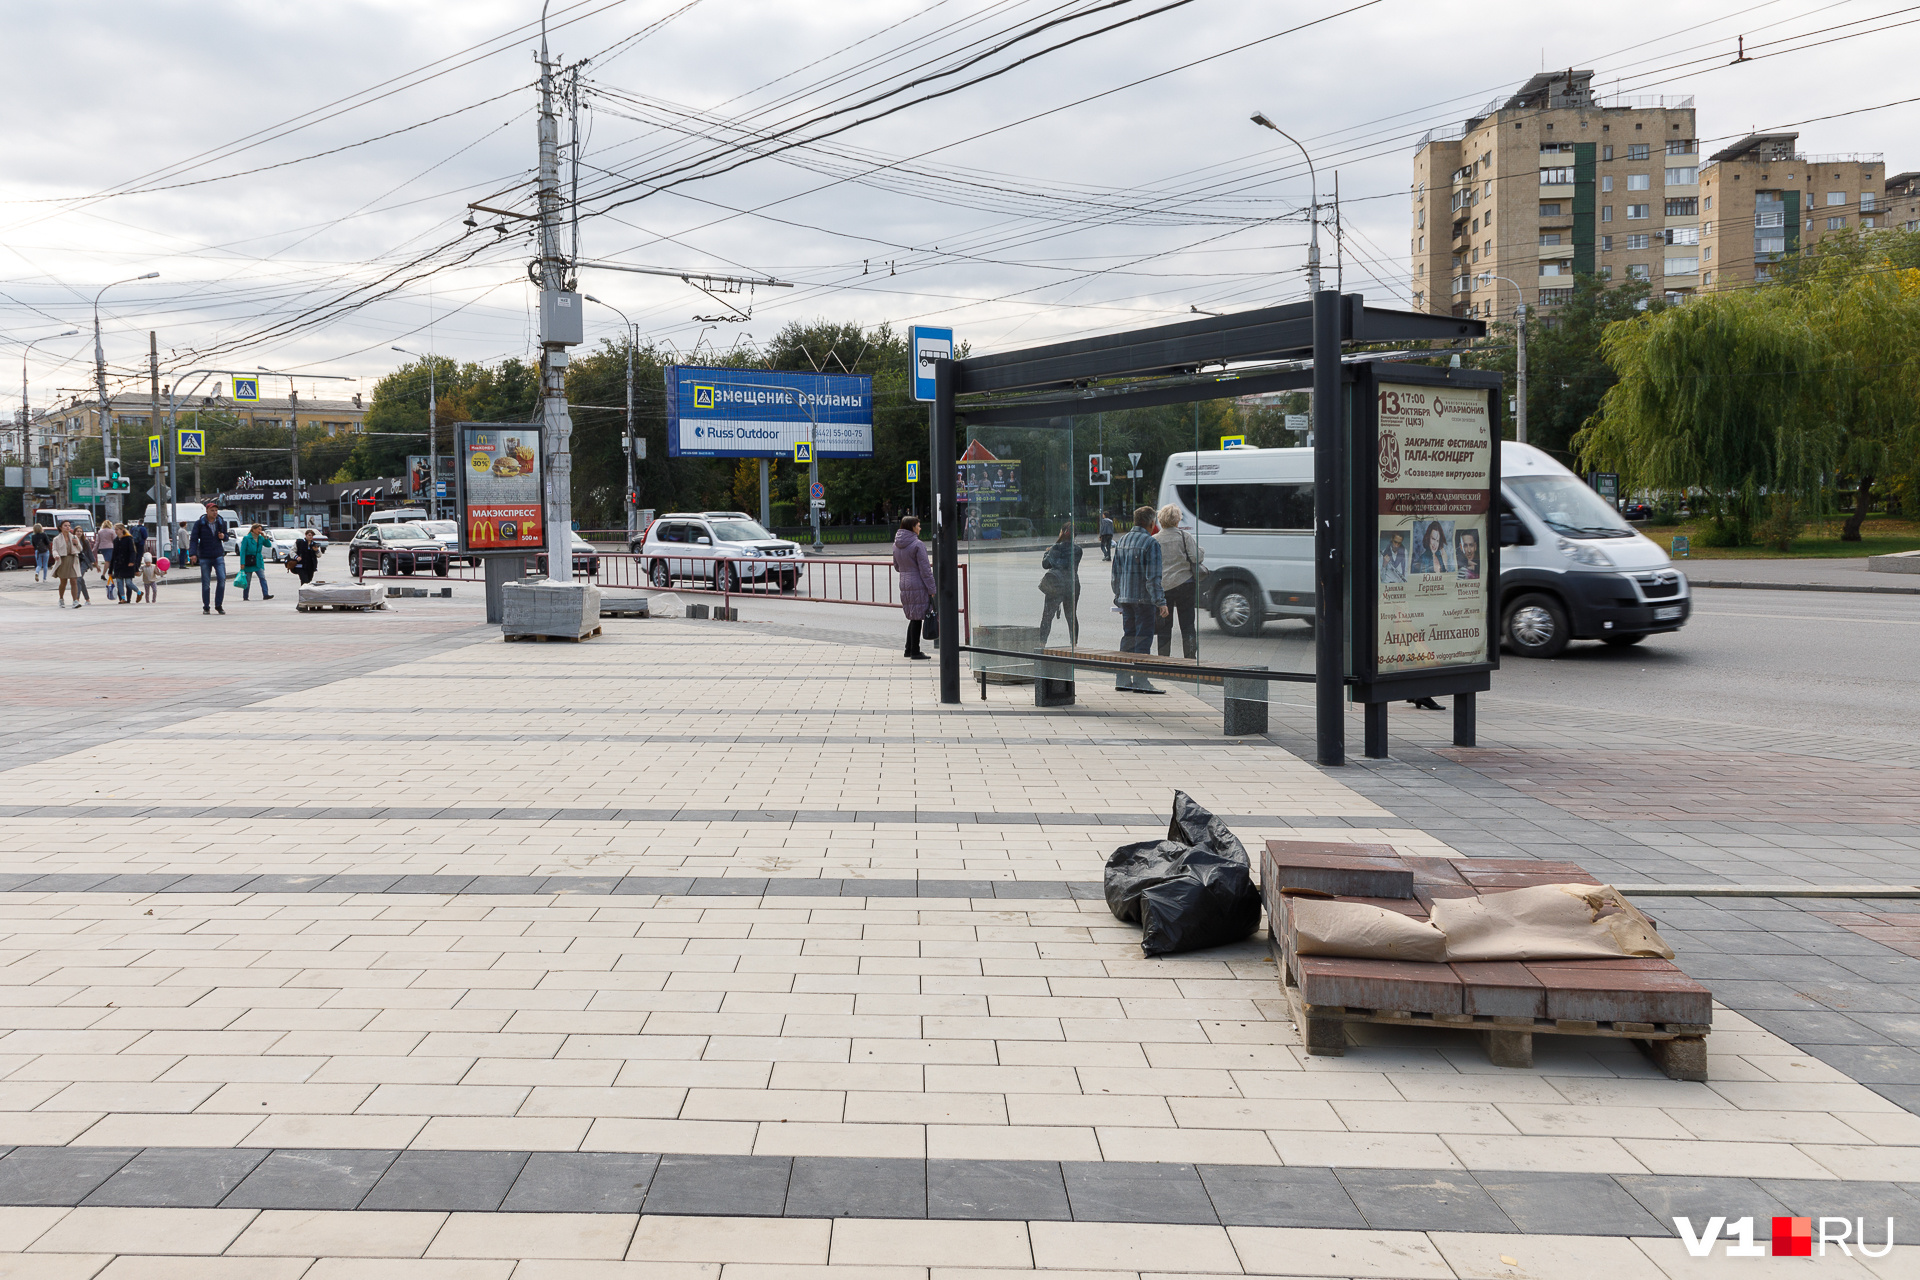 Площадь рядом с остановкой «Площадь Чекистов» уже укрыли брусчаткой